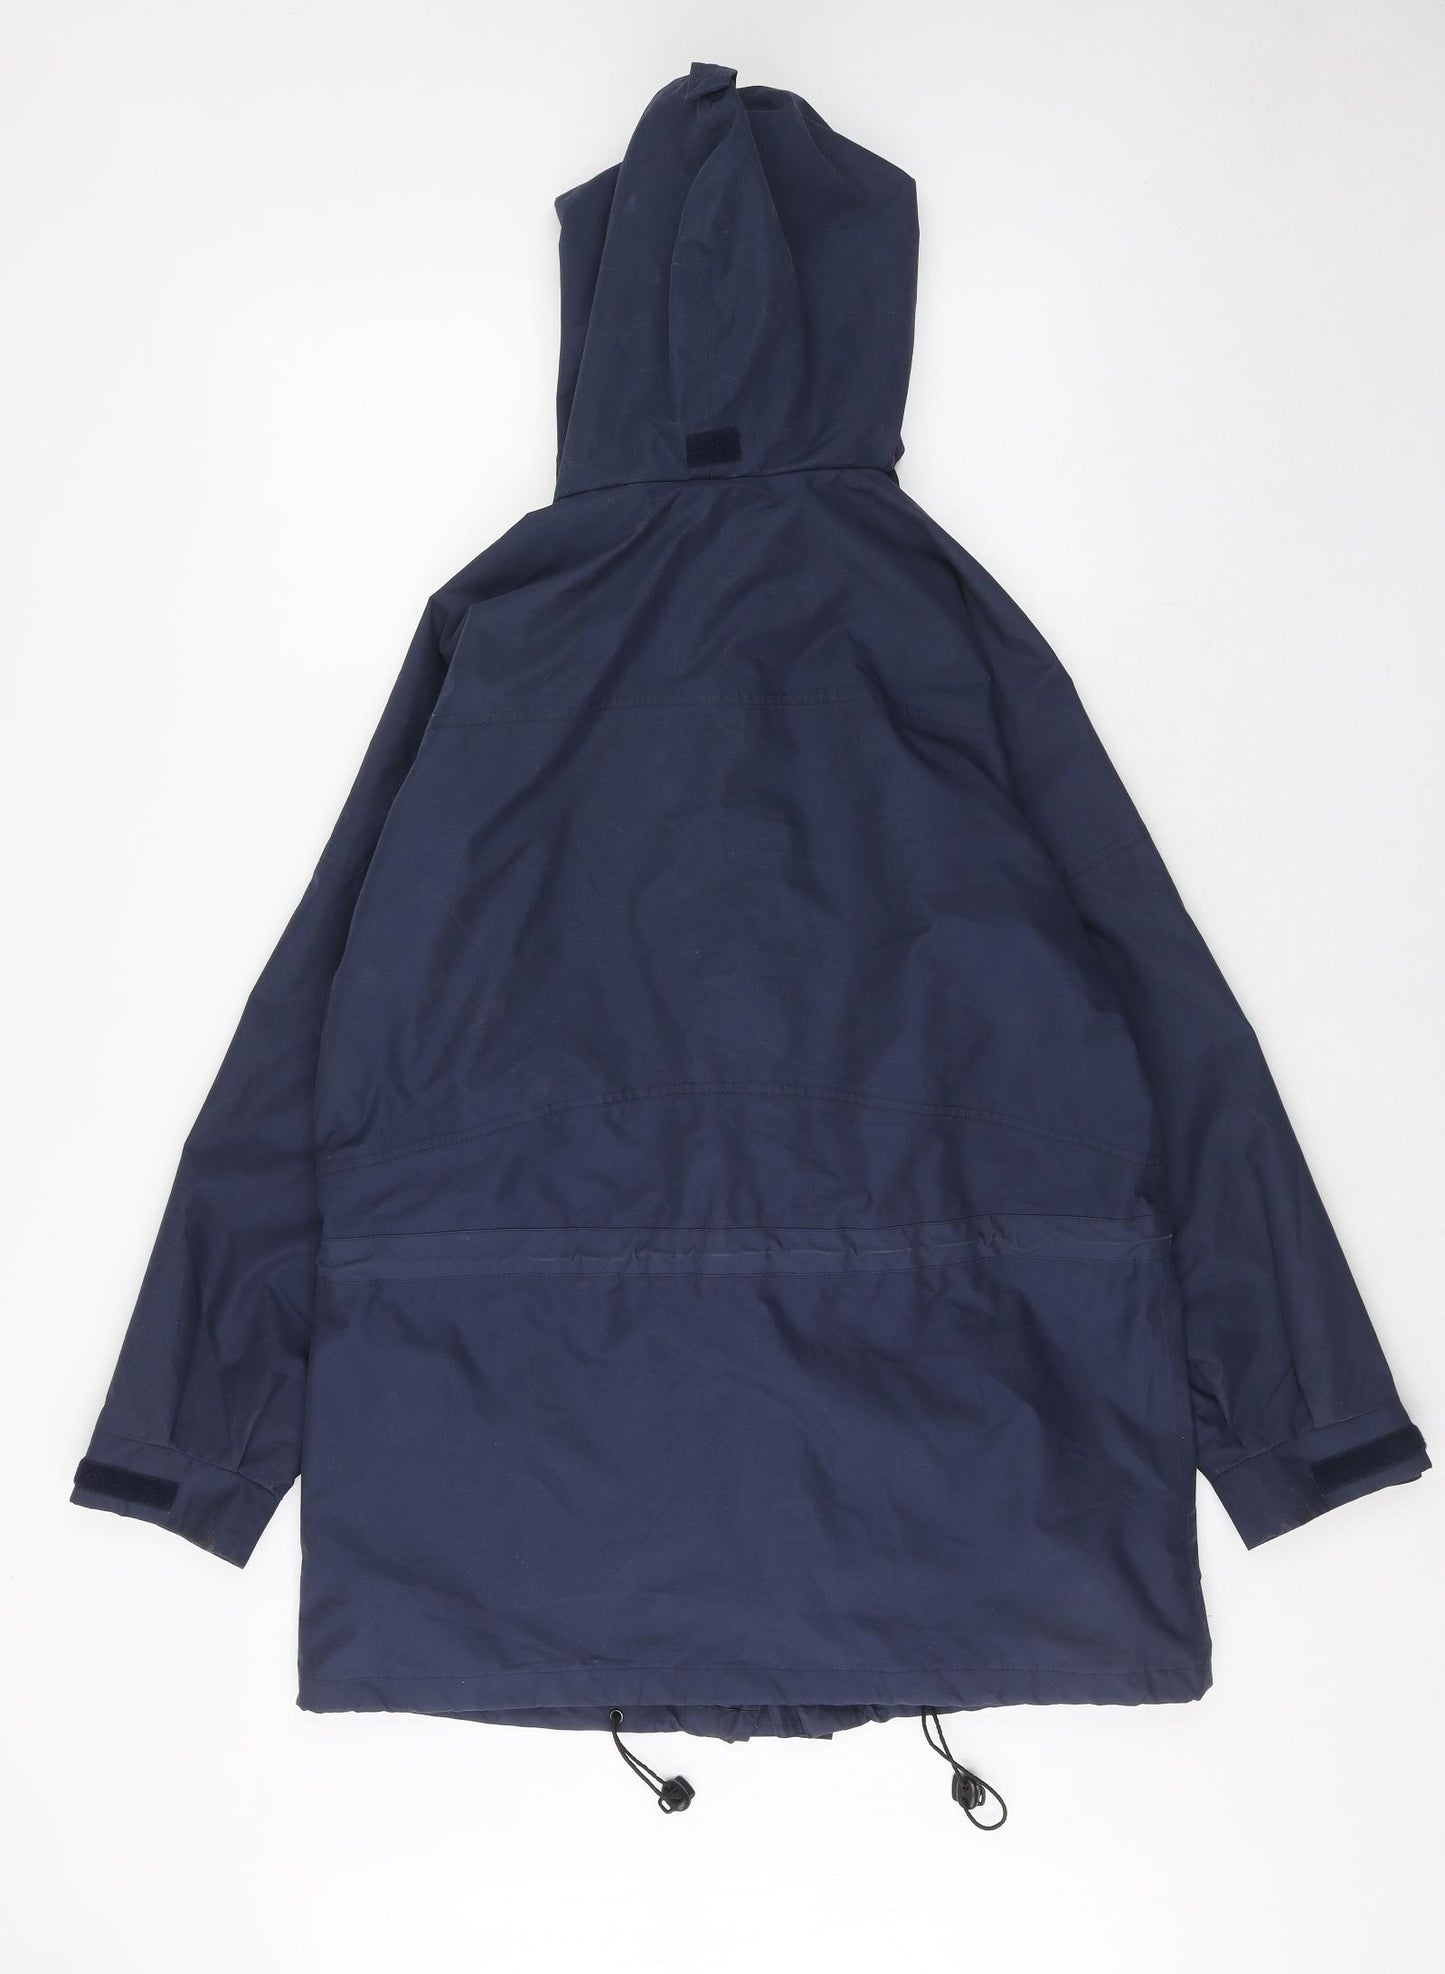 Meltemi Mens Blue Rain Coat Coat Size S Zip